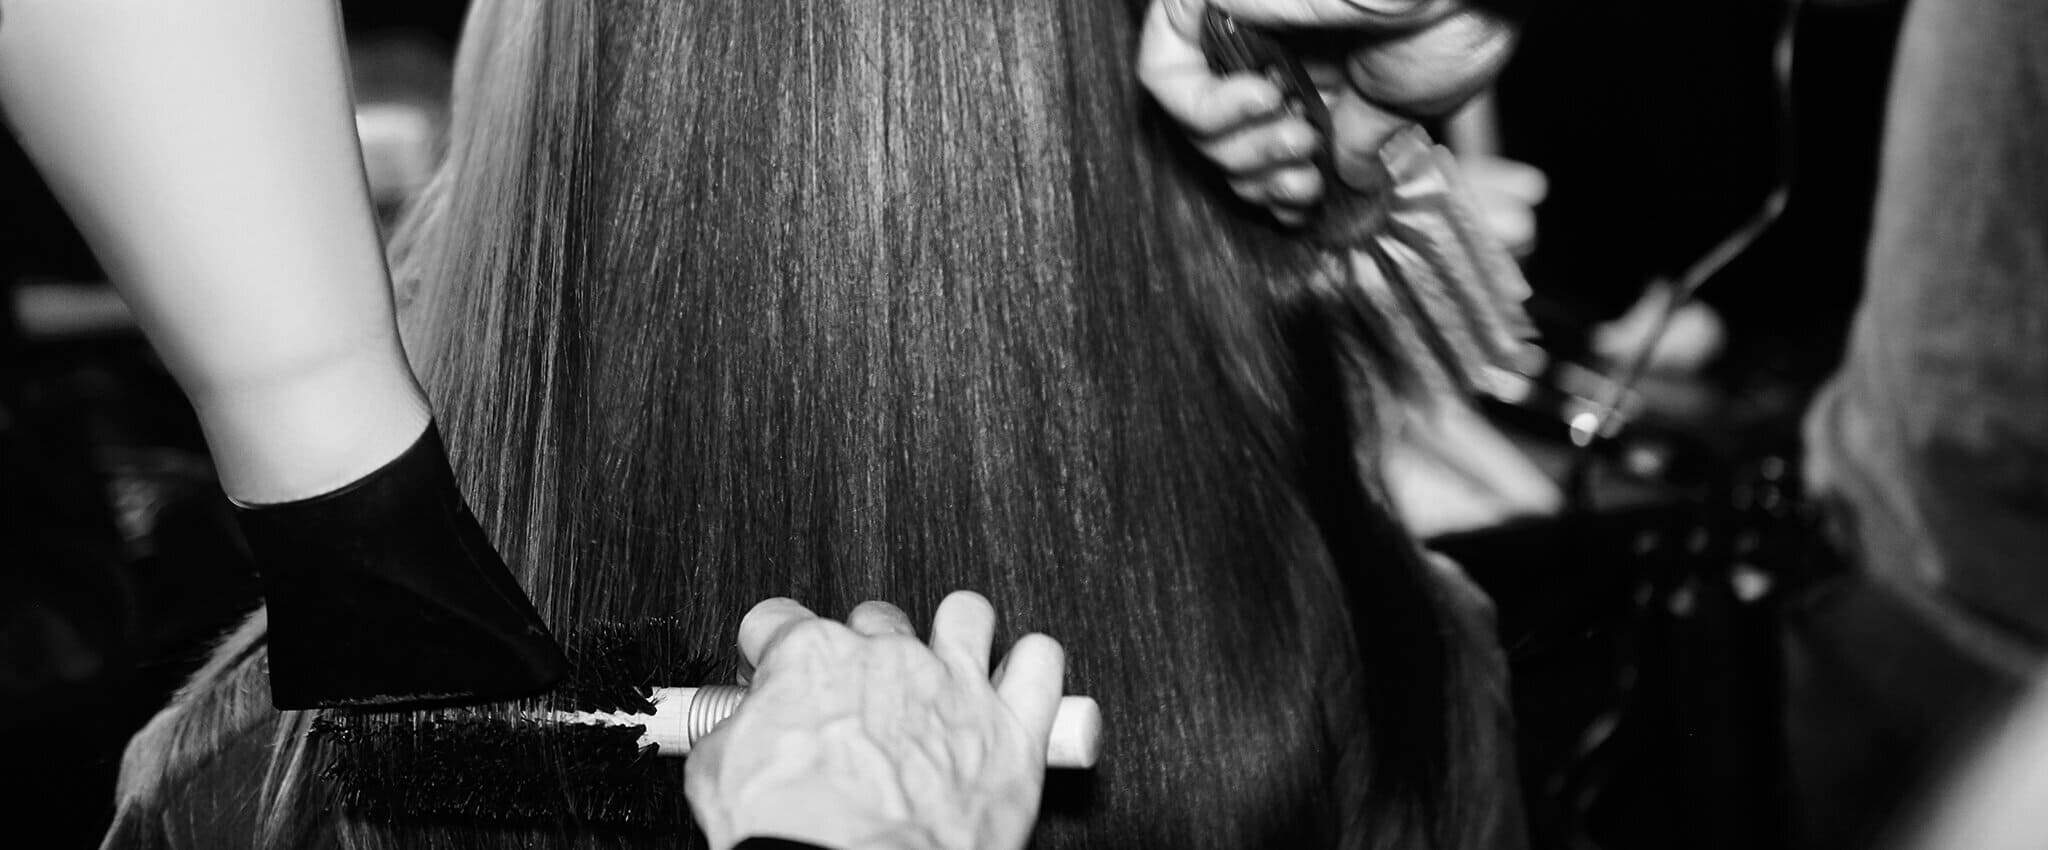 Dos estilistas usan un cepillo y un secador para peinar el cabello de una mujer.